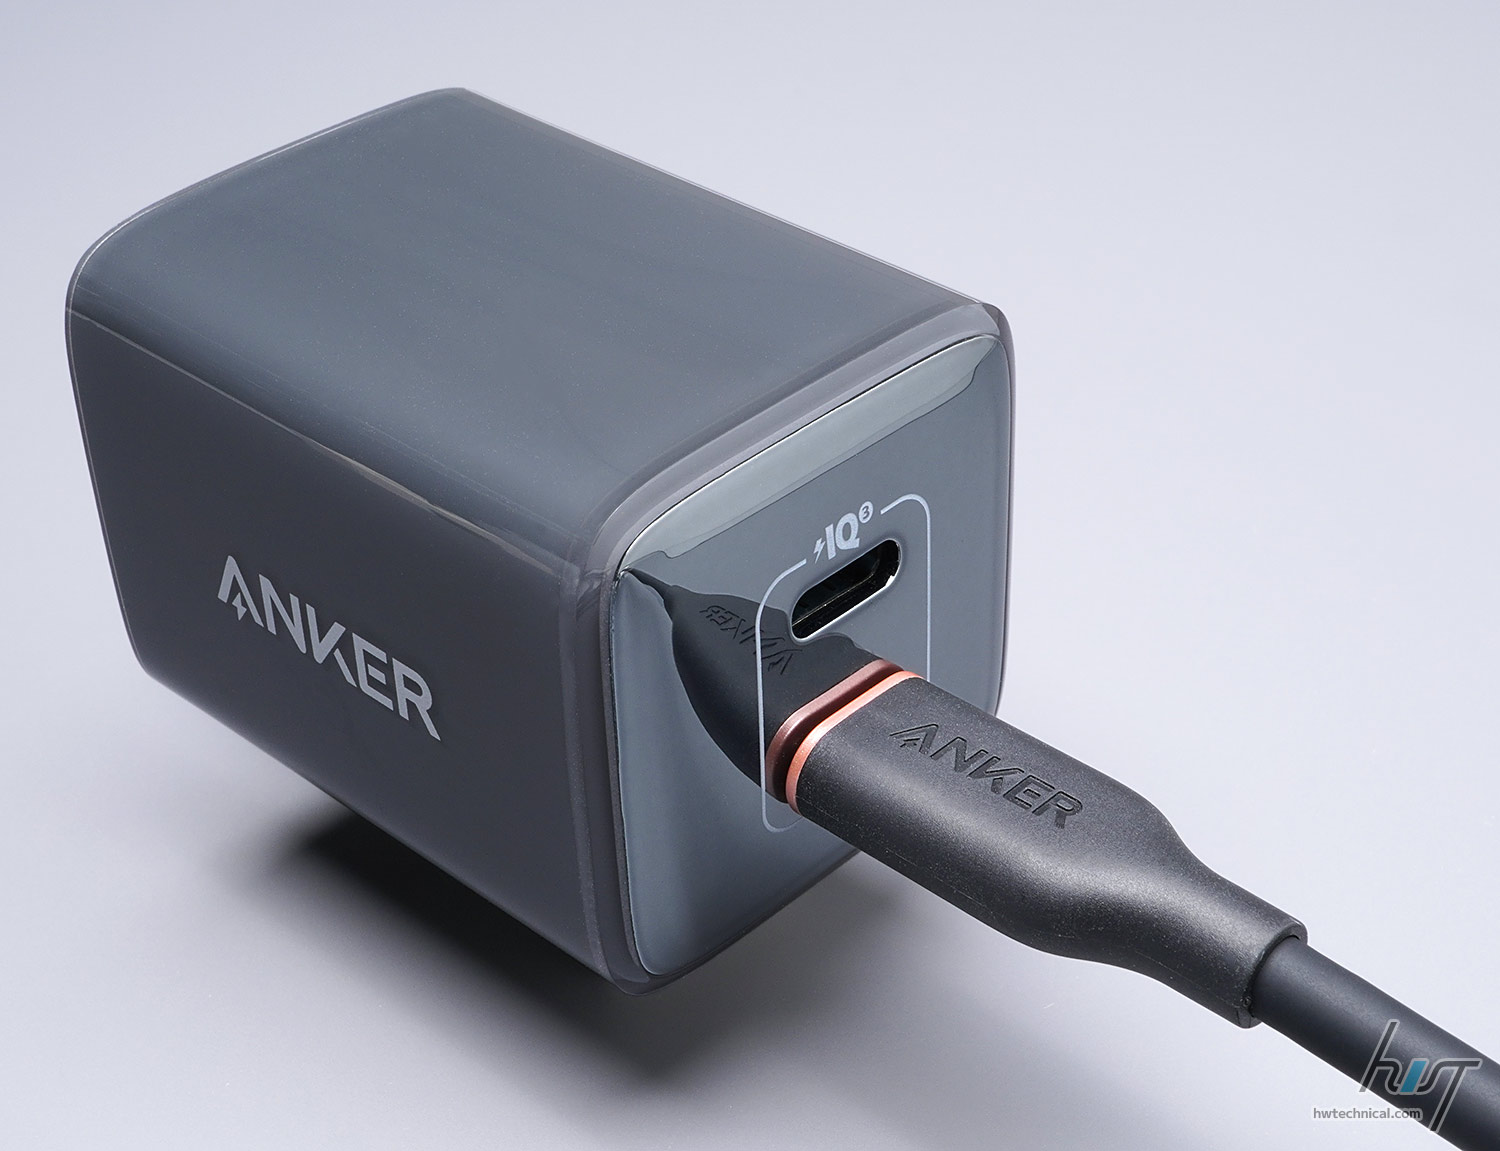 「Anker 521 Charger (Nano Pro) ブラック」に接続した状態